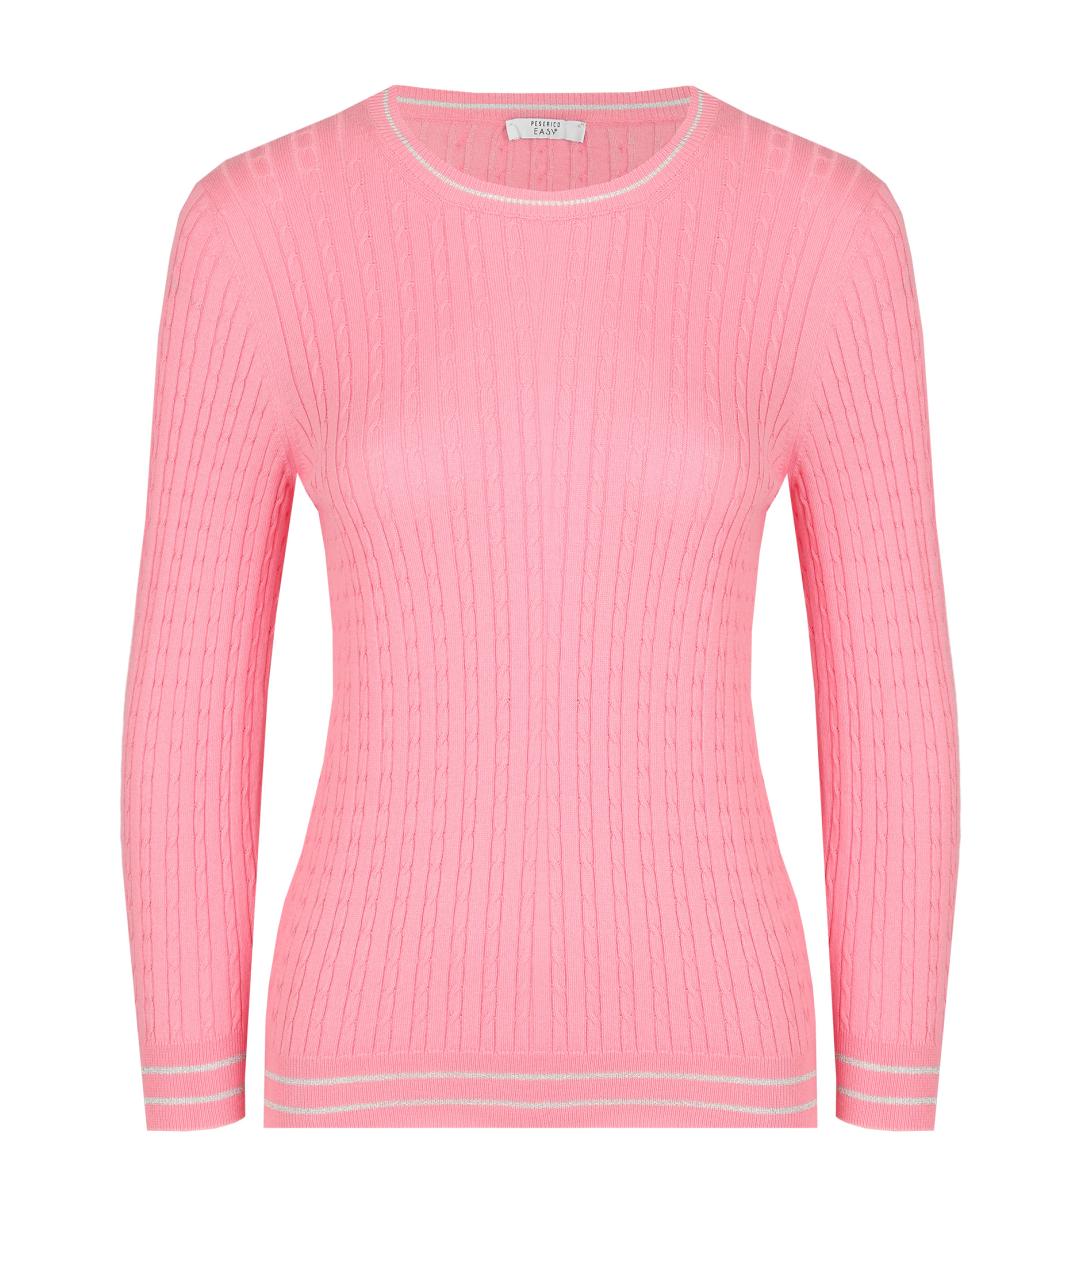 PESERICO Розовый хлопковый джемпер / свитер, фото 1